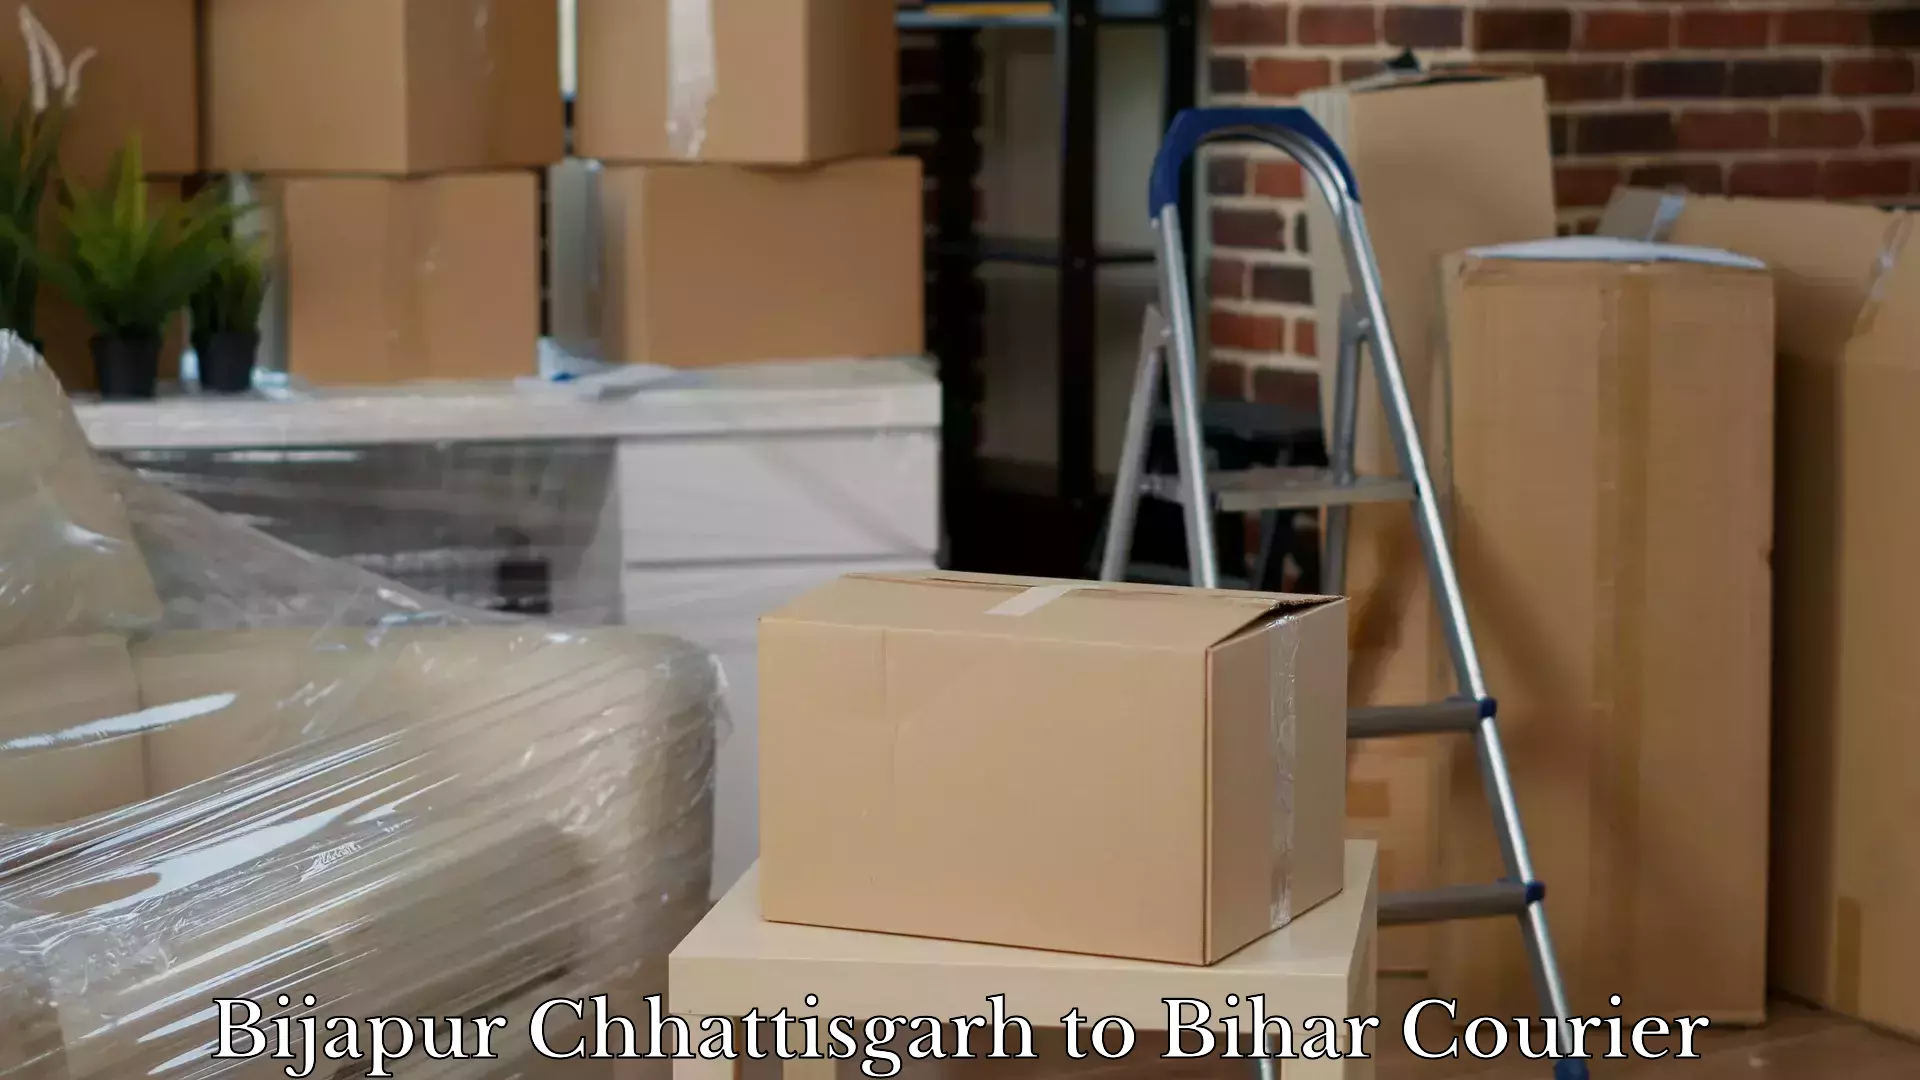 Luggage delivery estimate Bijapur Chhattisgarh to Aurai